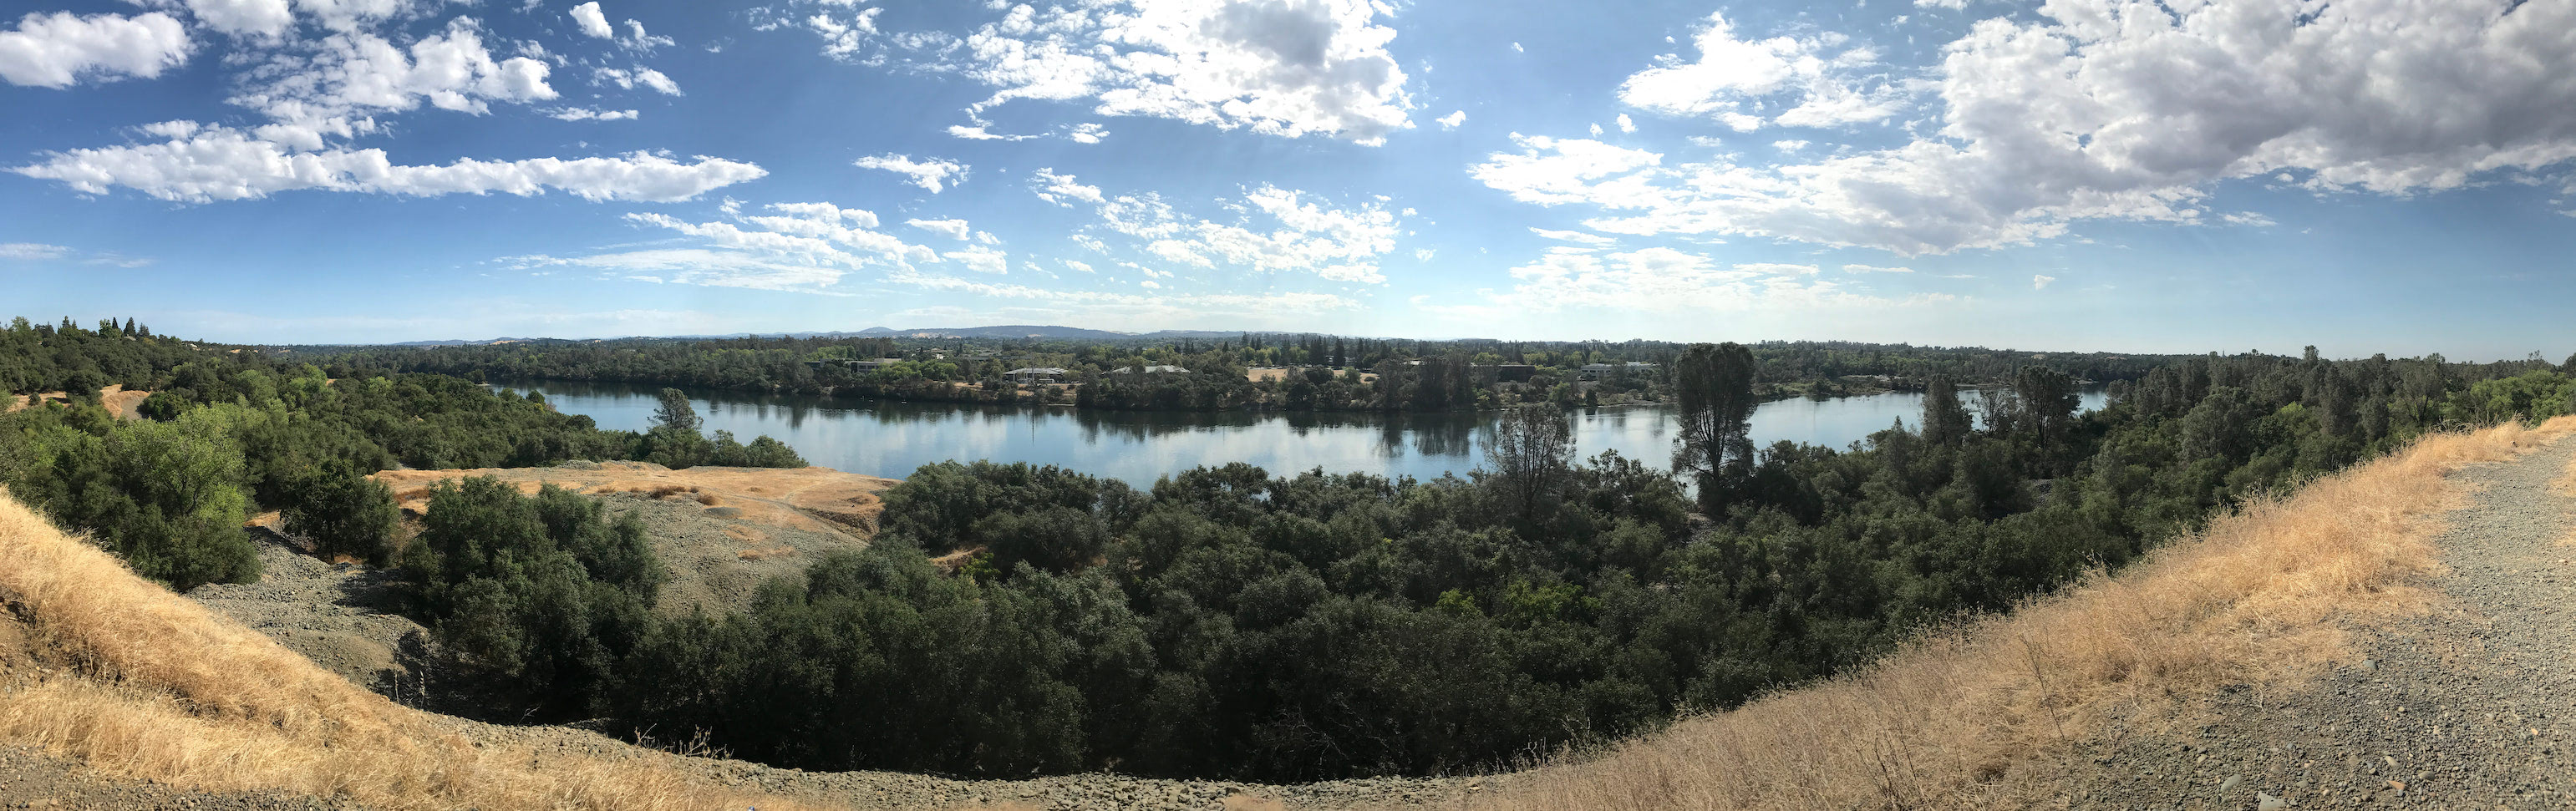 American River panorama